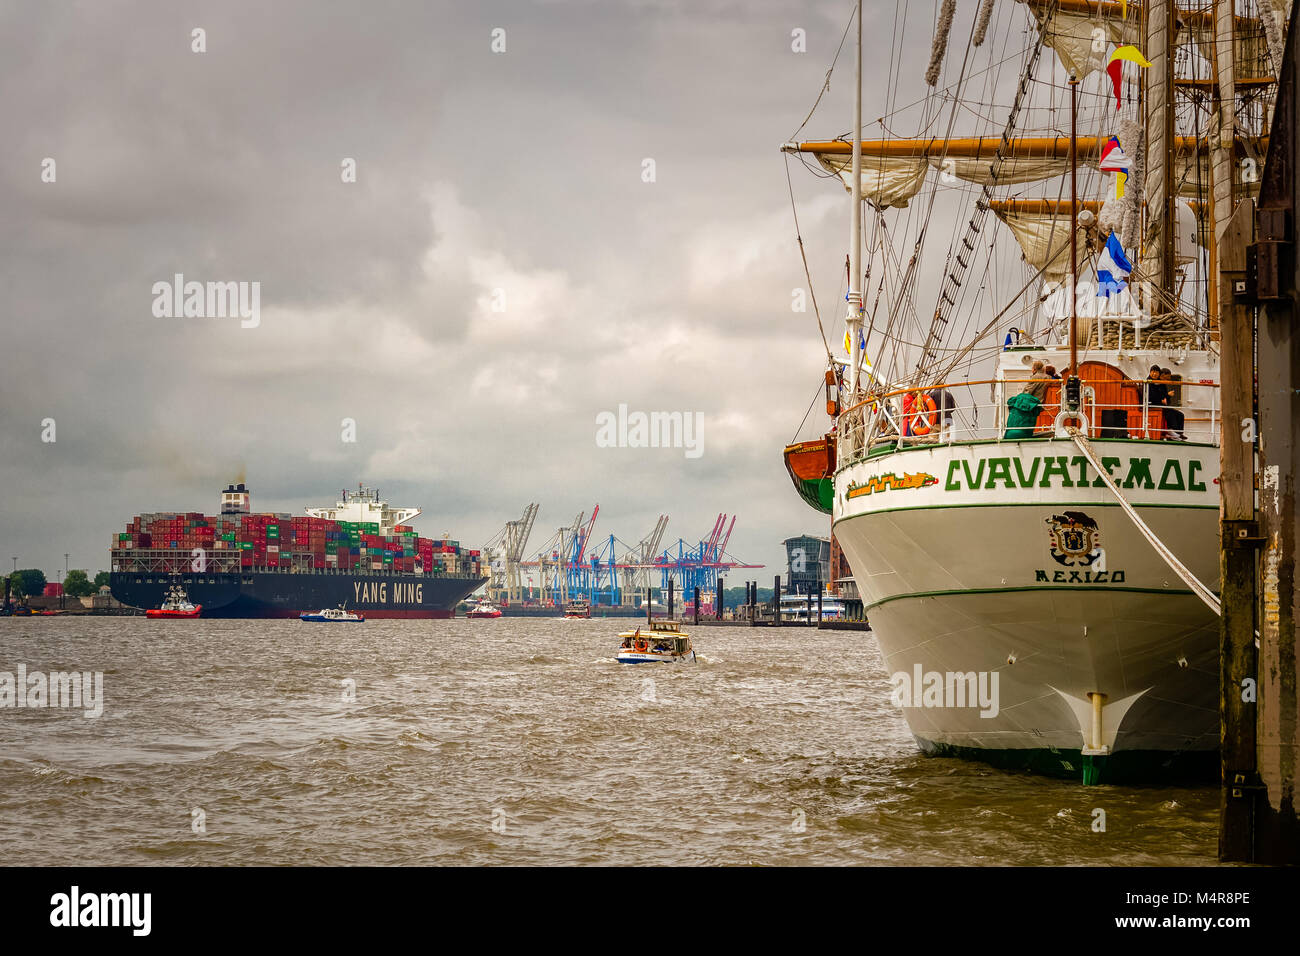 Hamburg, Deutschland, 06. Juni 2016: Mexikanische Schulschiff, Manizales, Verlegung im Hamburger Hafen und einer großen Yang Ming Container schiff Anker. Stockfoto